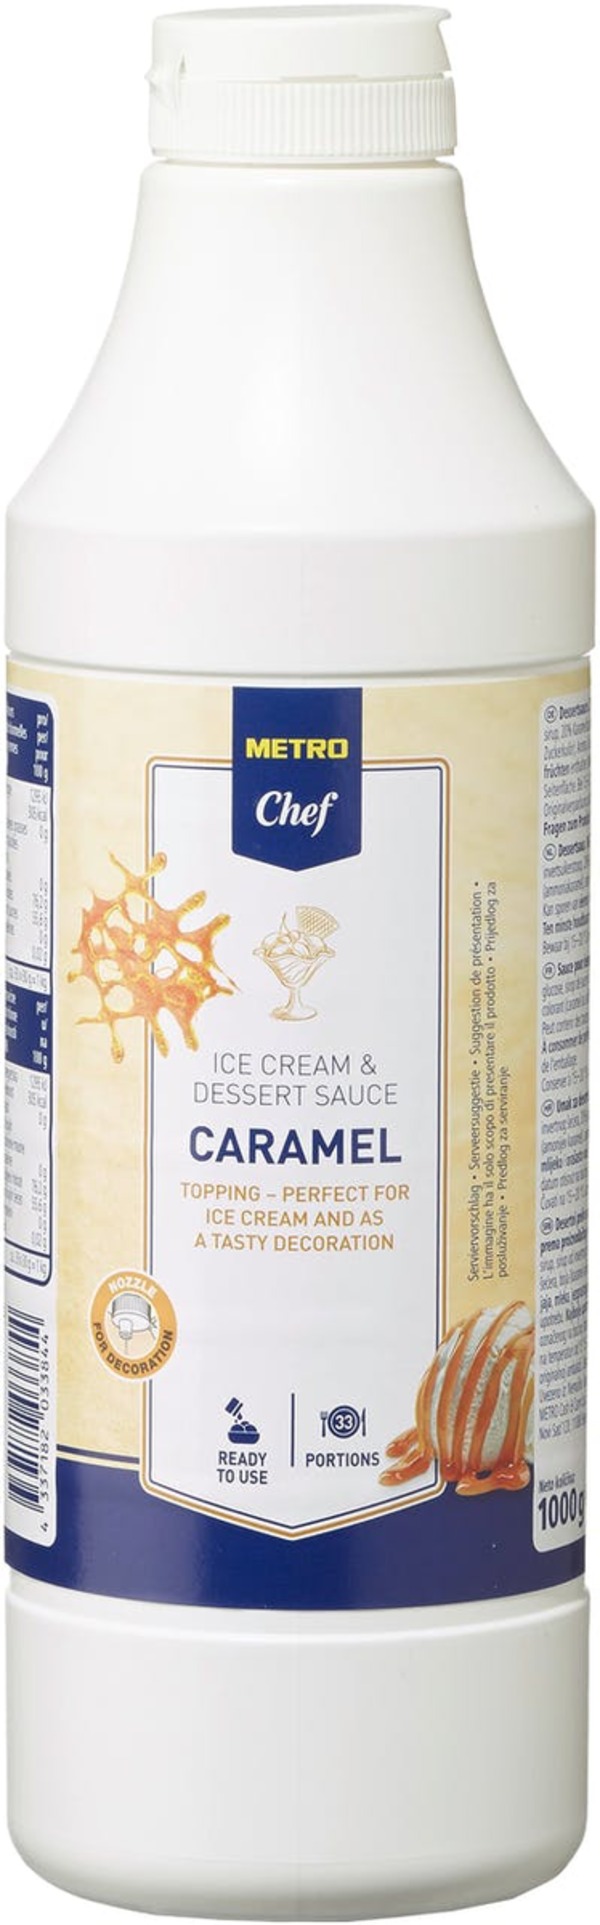 Bild 1 von METRO Chef Dessertsauce Karamell (1 l)